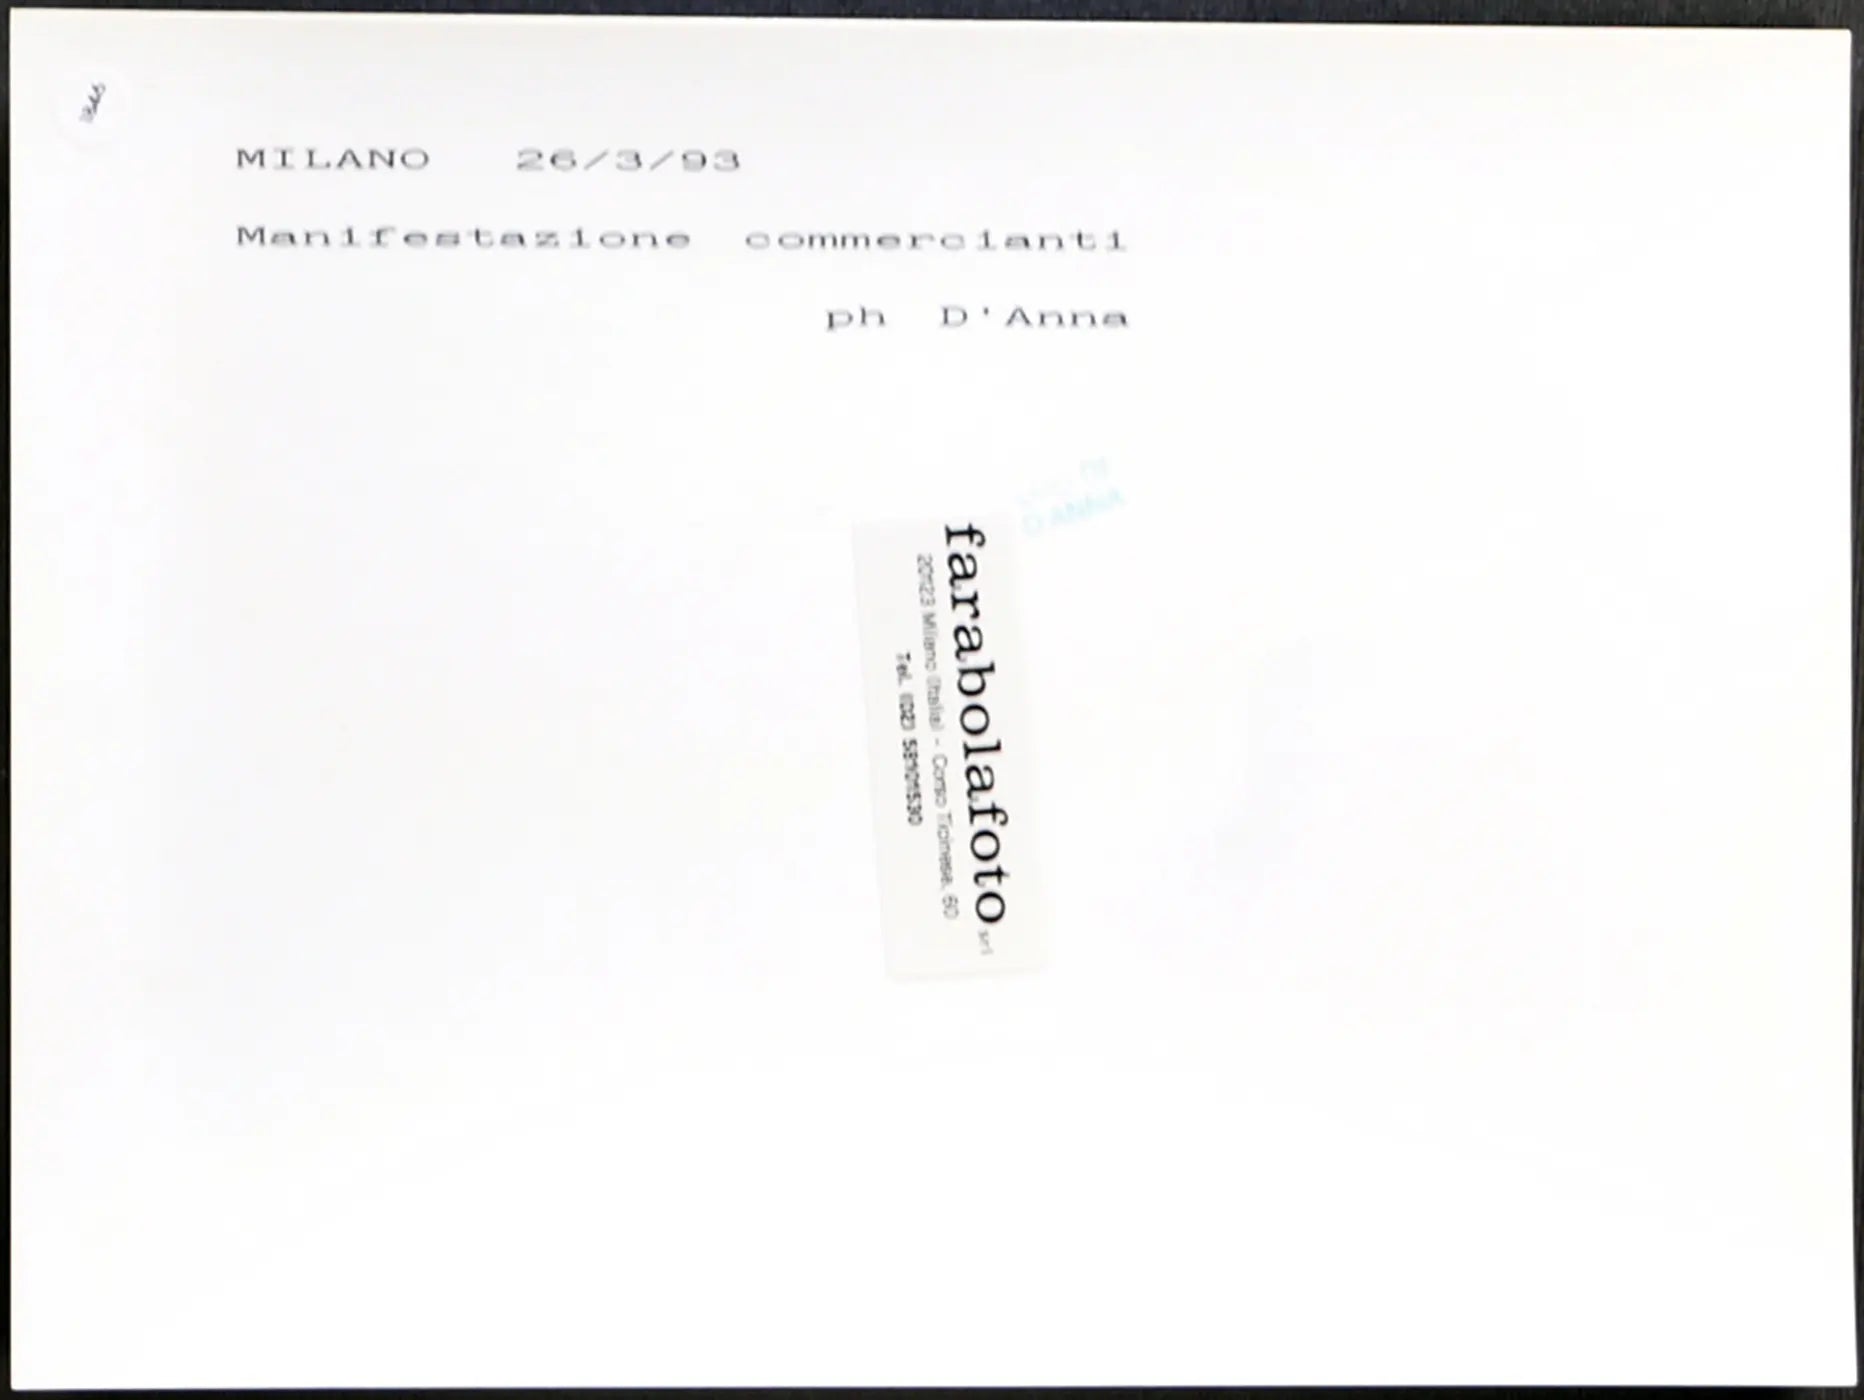 Manifestazione commercianti 1993 Ft 1846 - Stampa 24x18 cm - Farabola Stampa ai sali d'argento